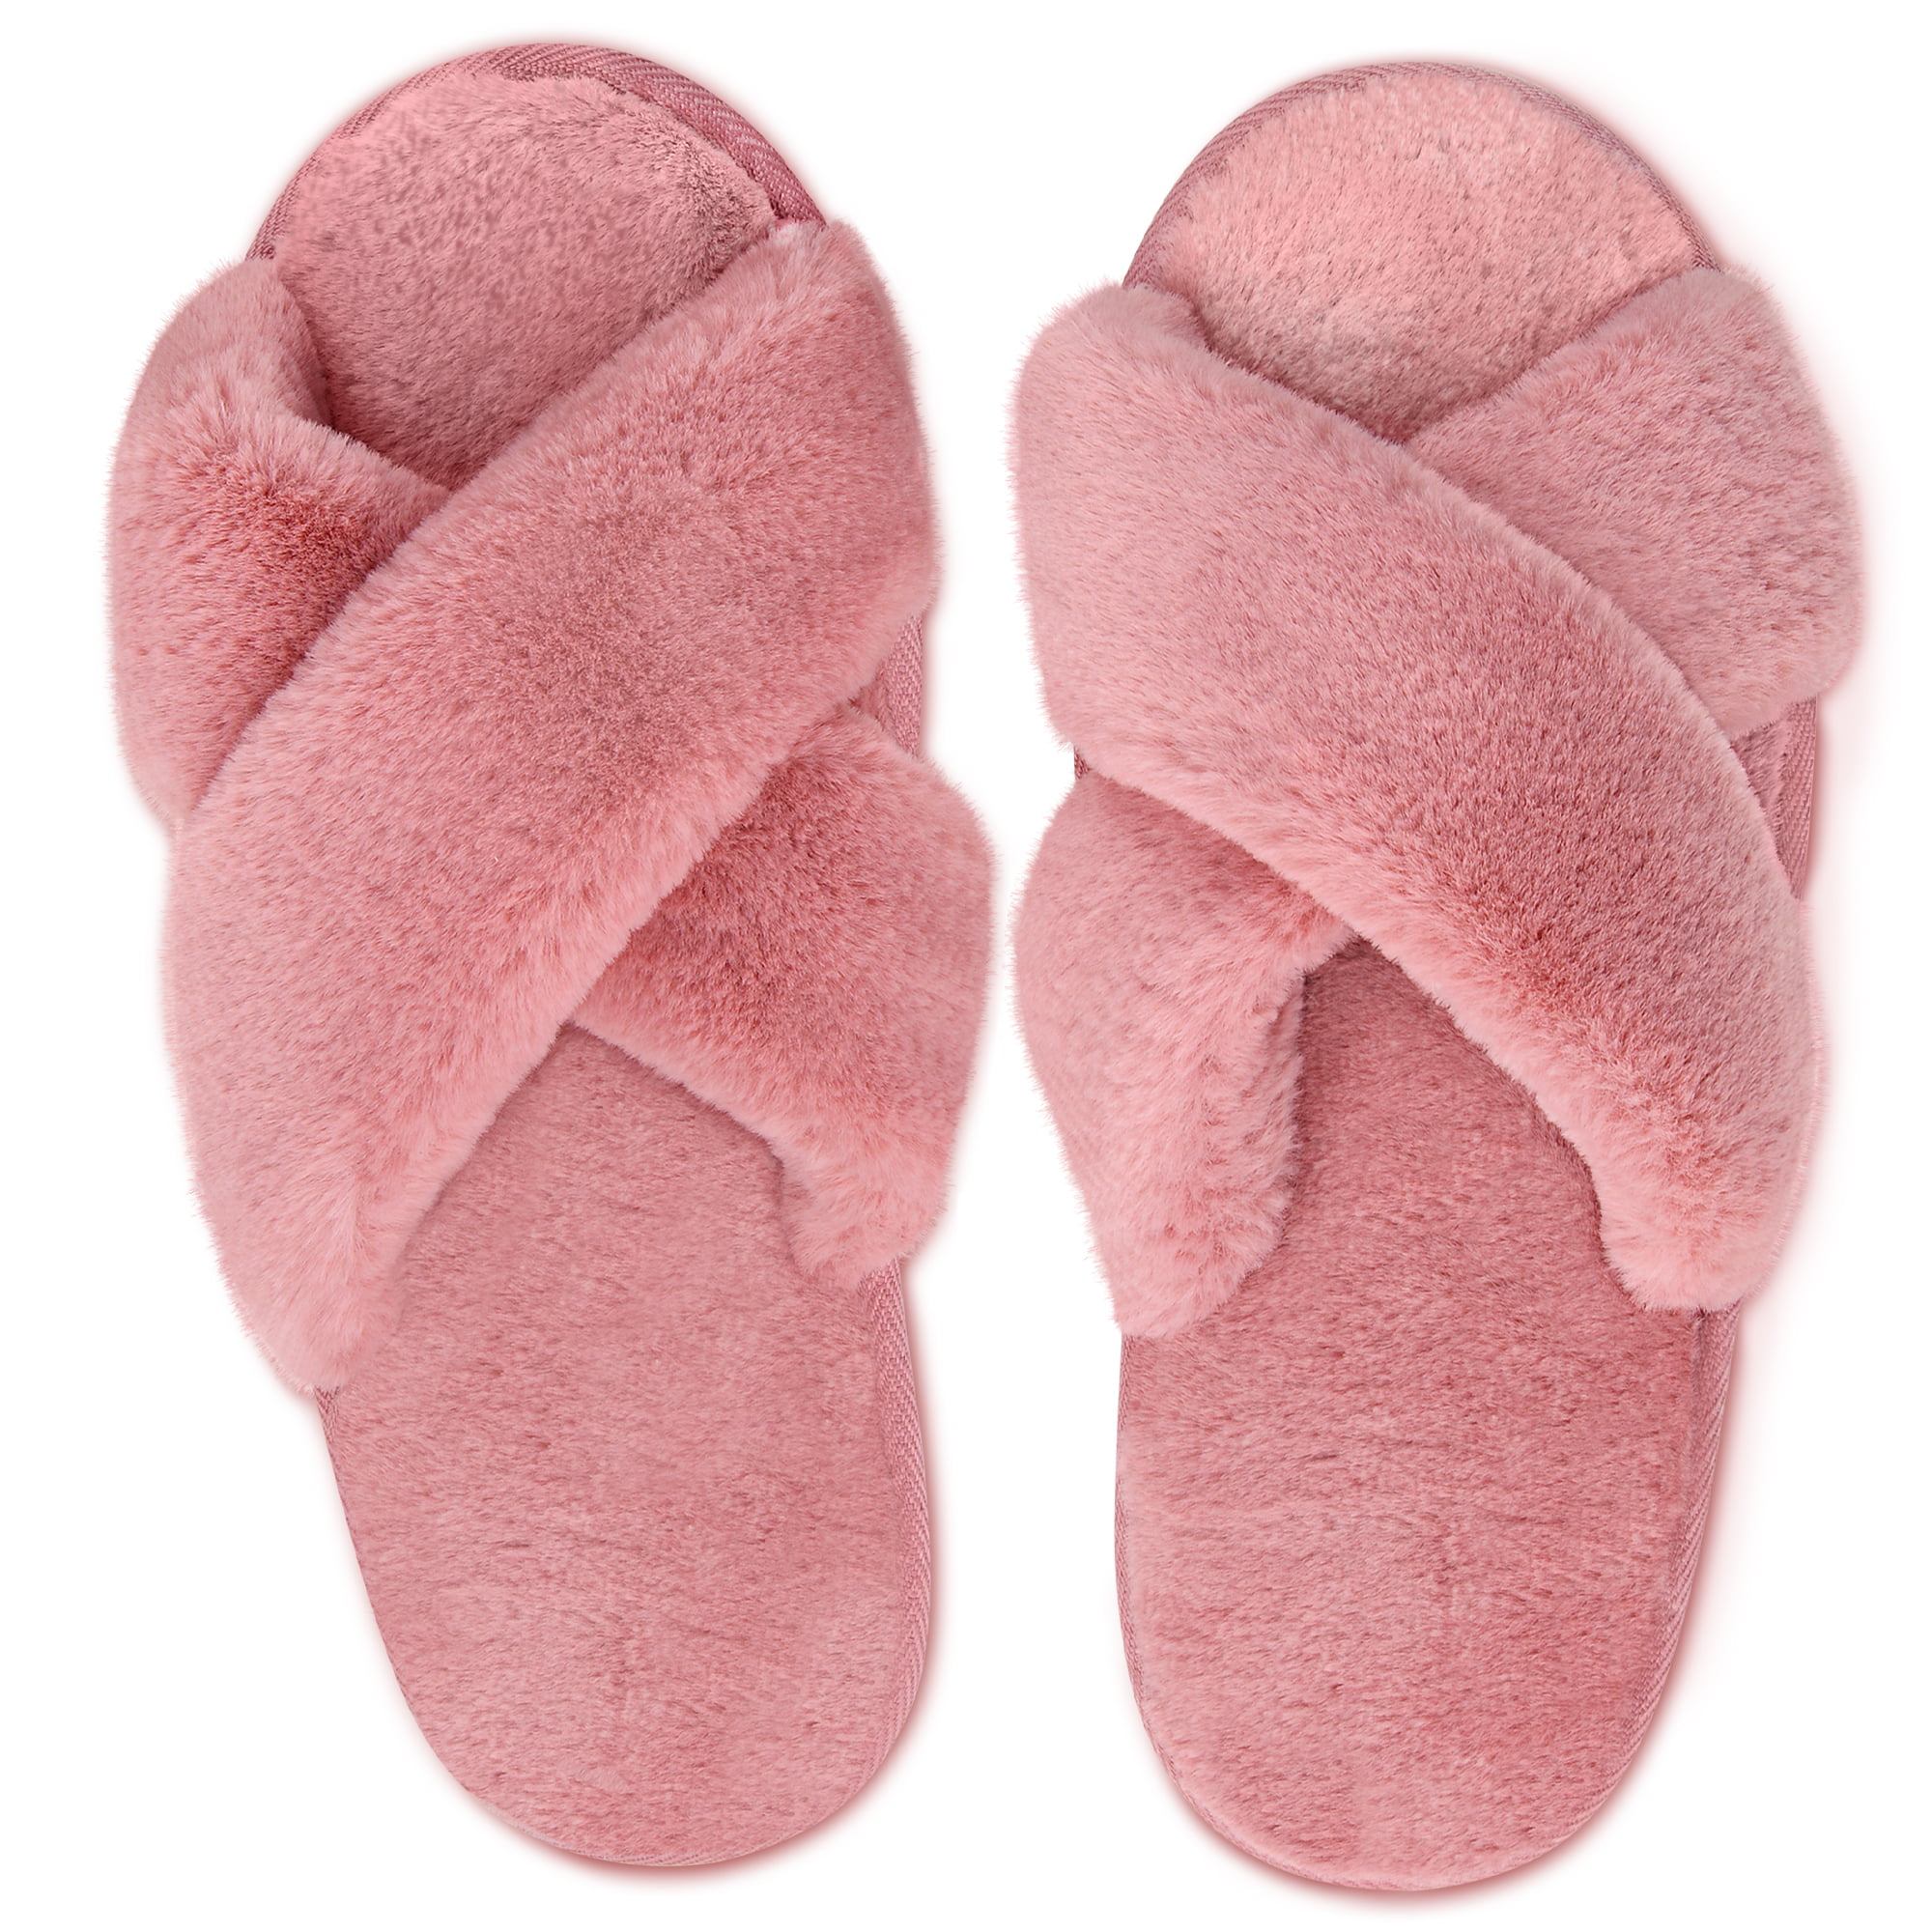 poop slippers walmart